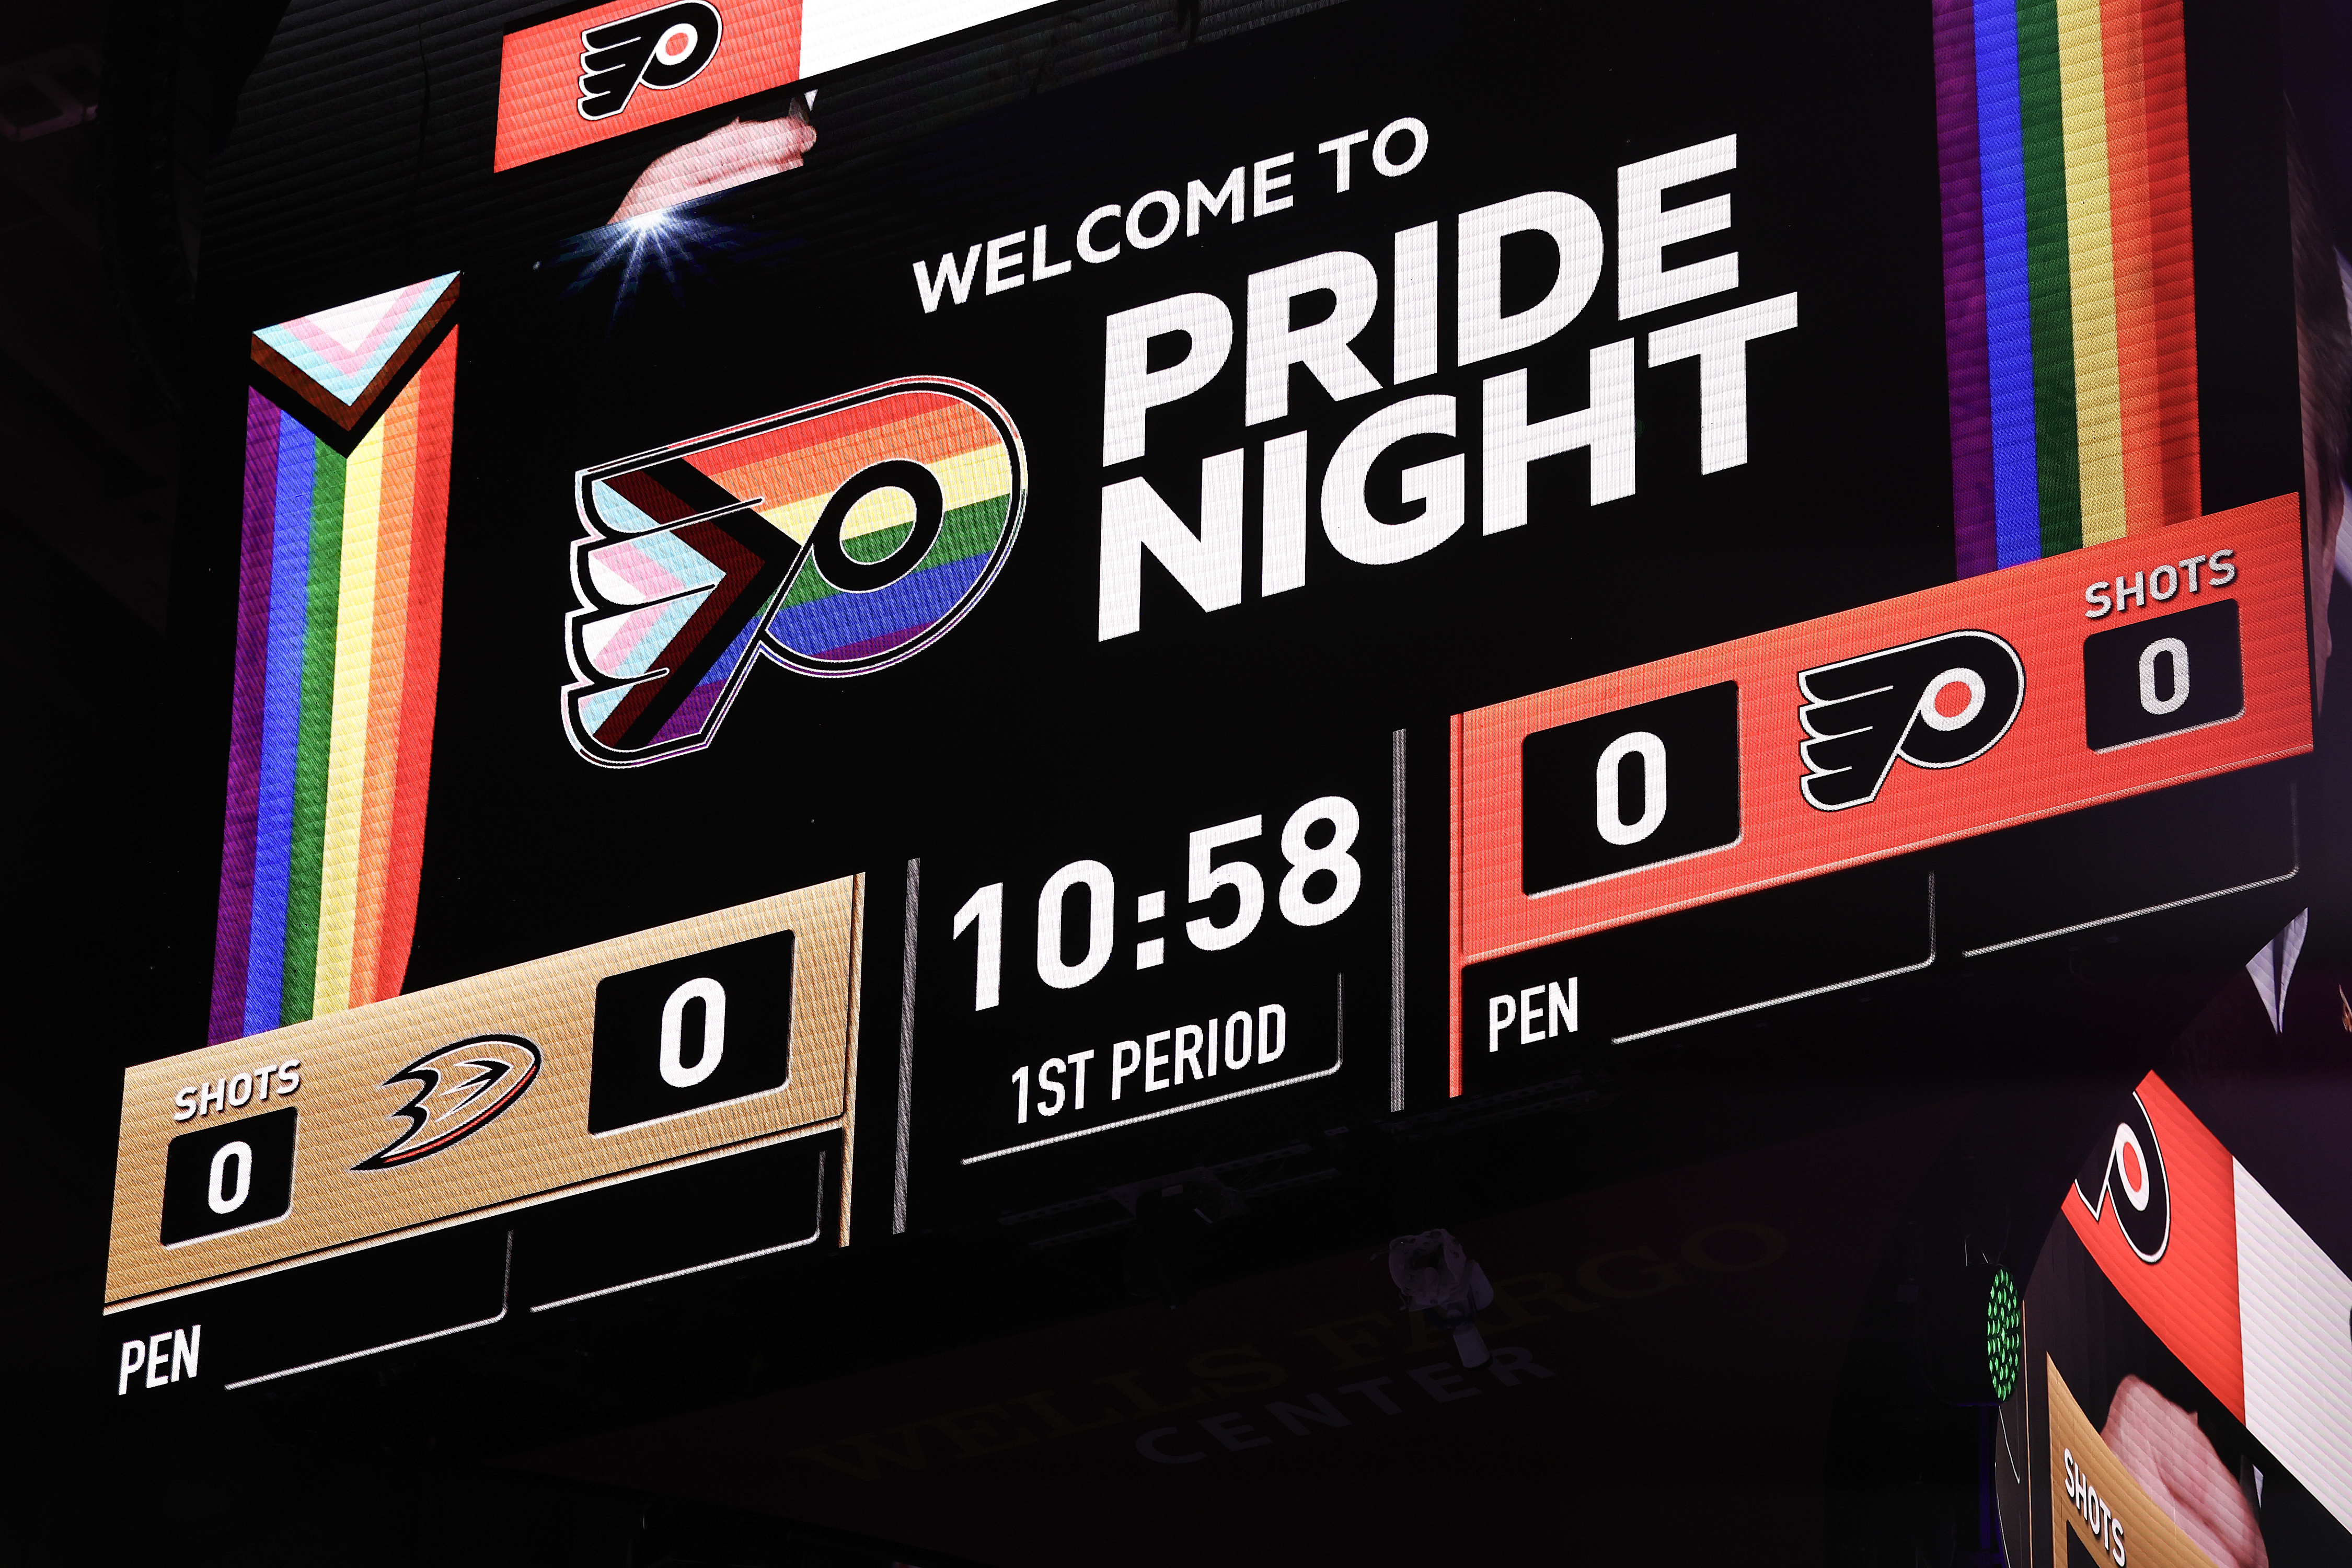 Flyers' Provorov cites religion for boycott on Pride night